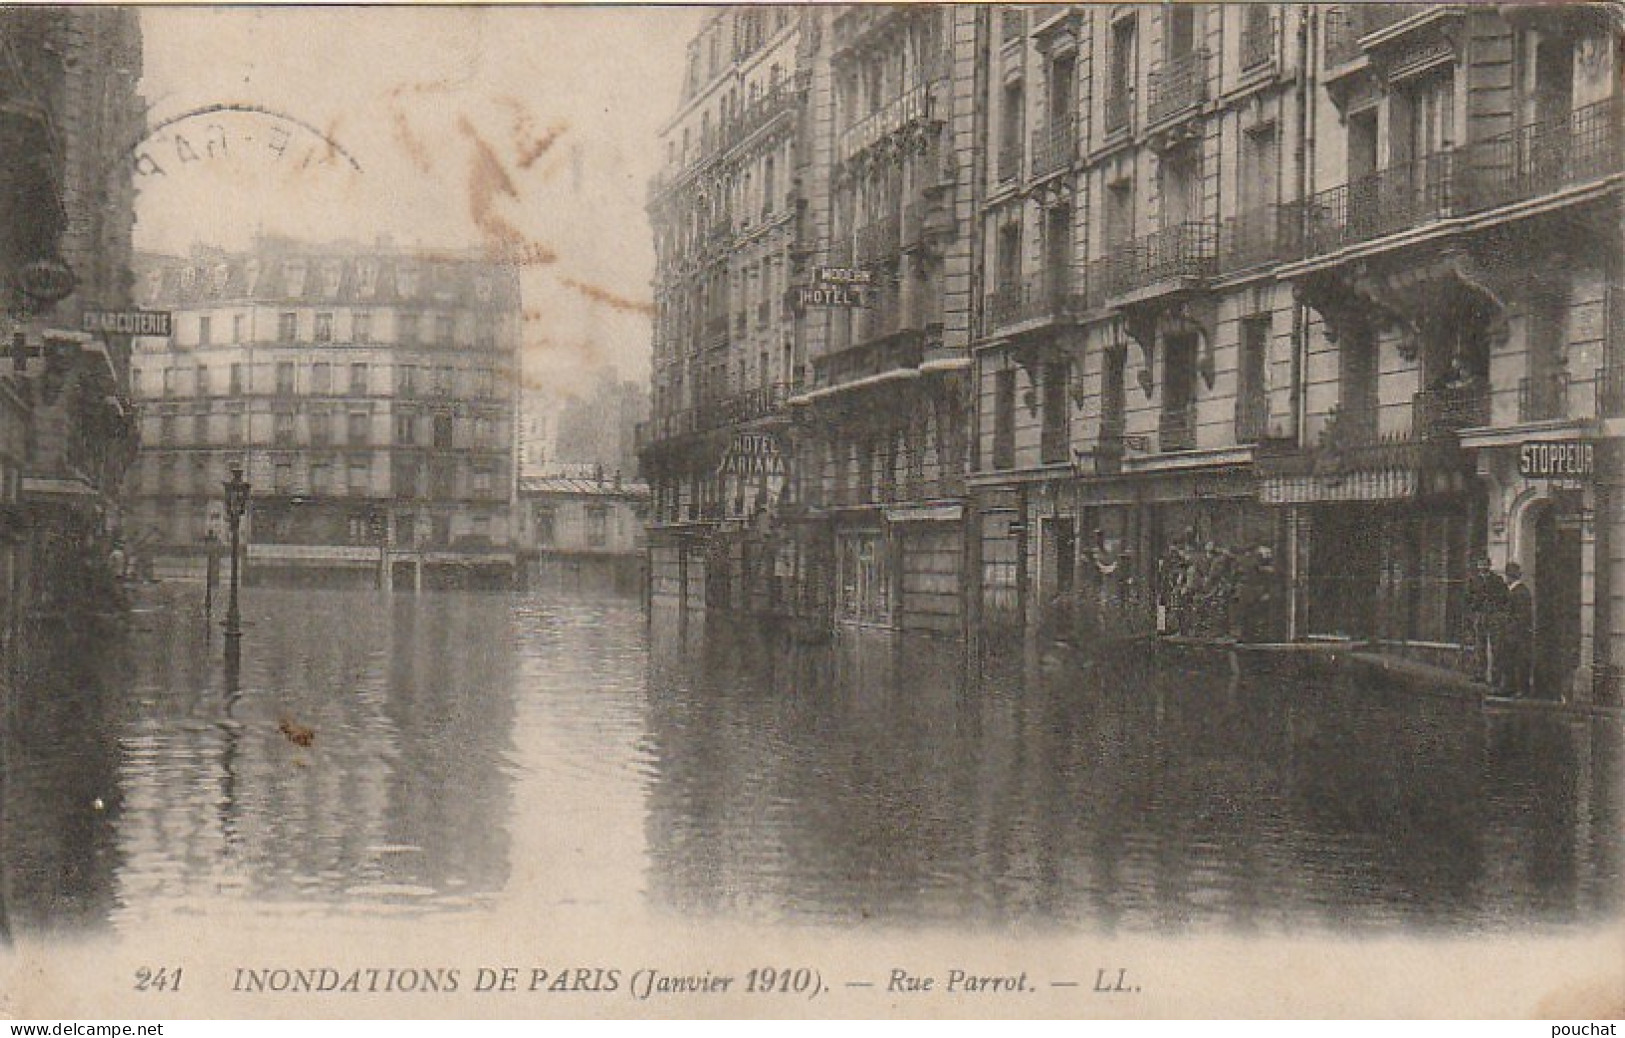 IN 28- (75) INONDATIONS DE PARIS - RUE PARROT - TAMPON " AU BONHEUR DES DAMES " - 2 SCANS - Paris Flood, 1910